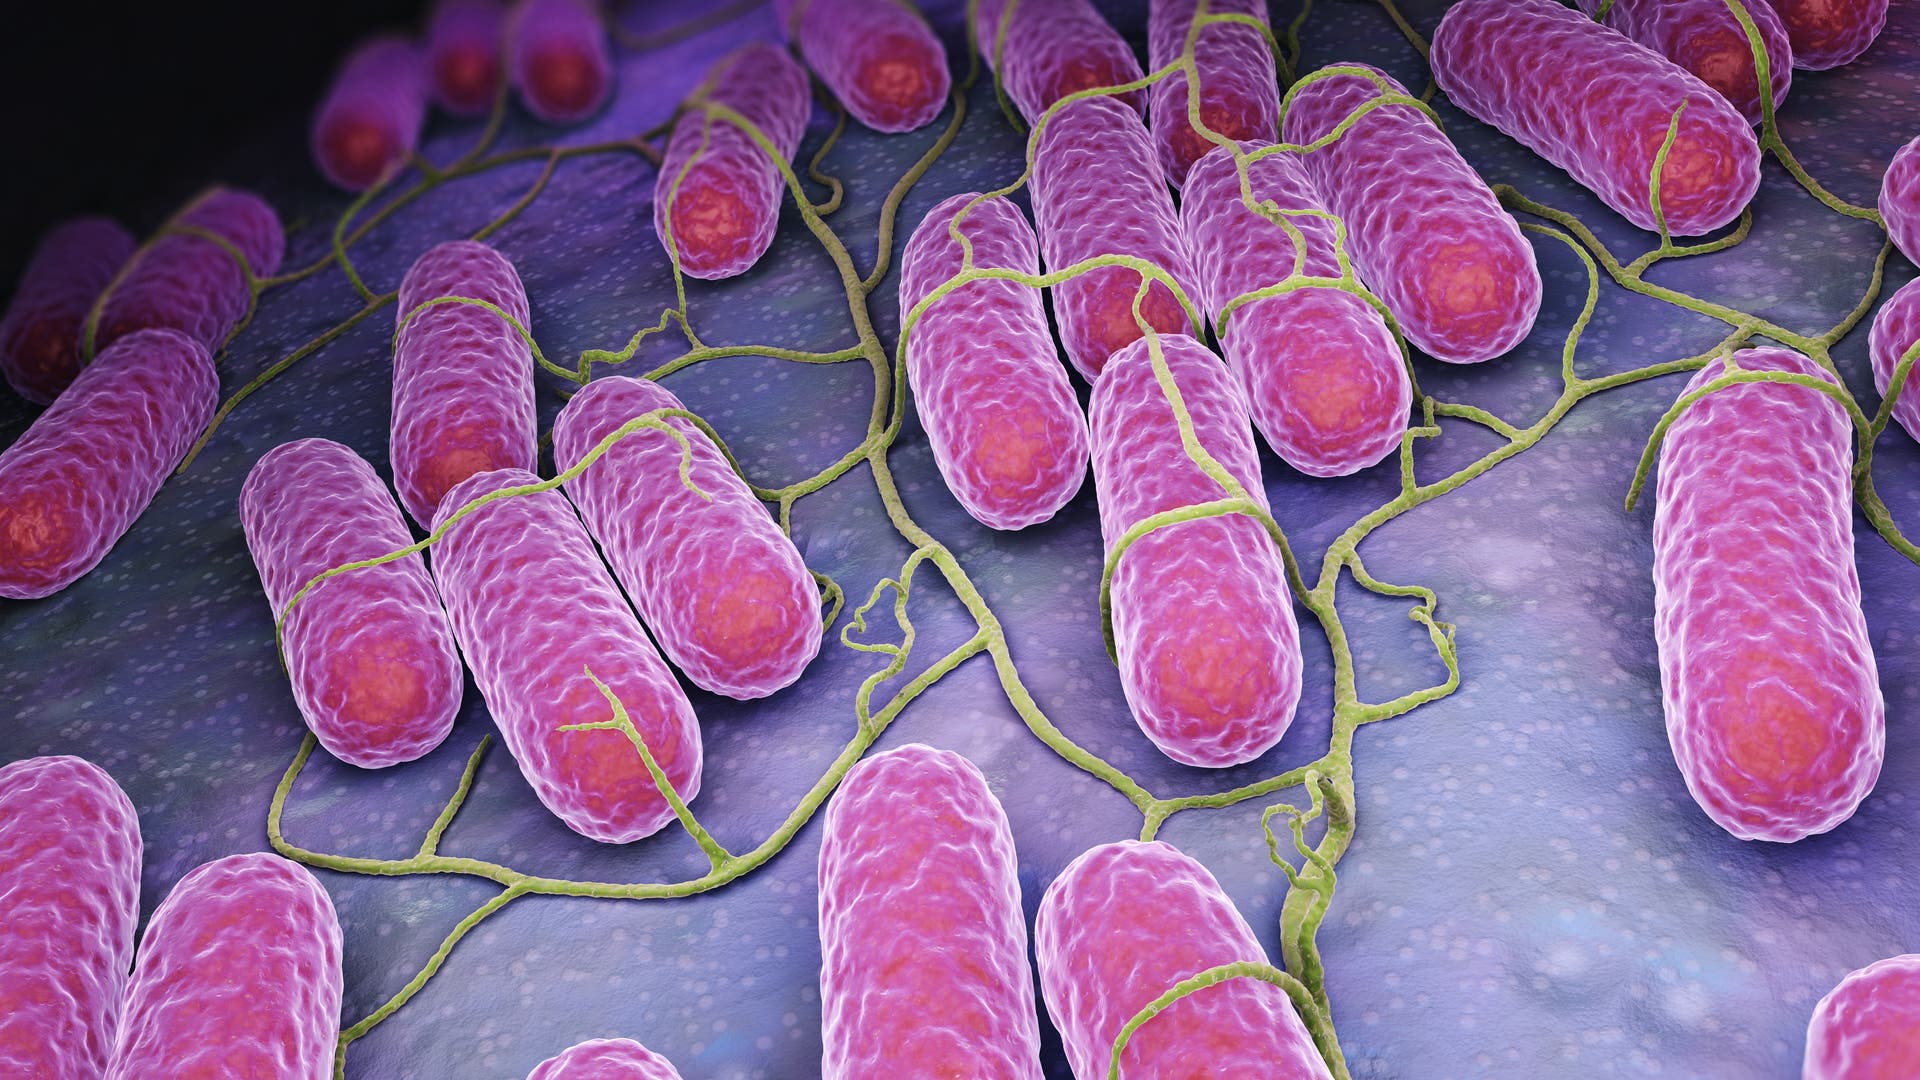 Tifus: Sistem kekebalan menyerang salmonella di limpa